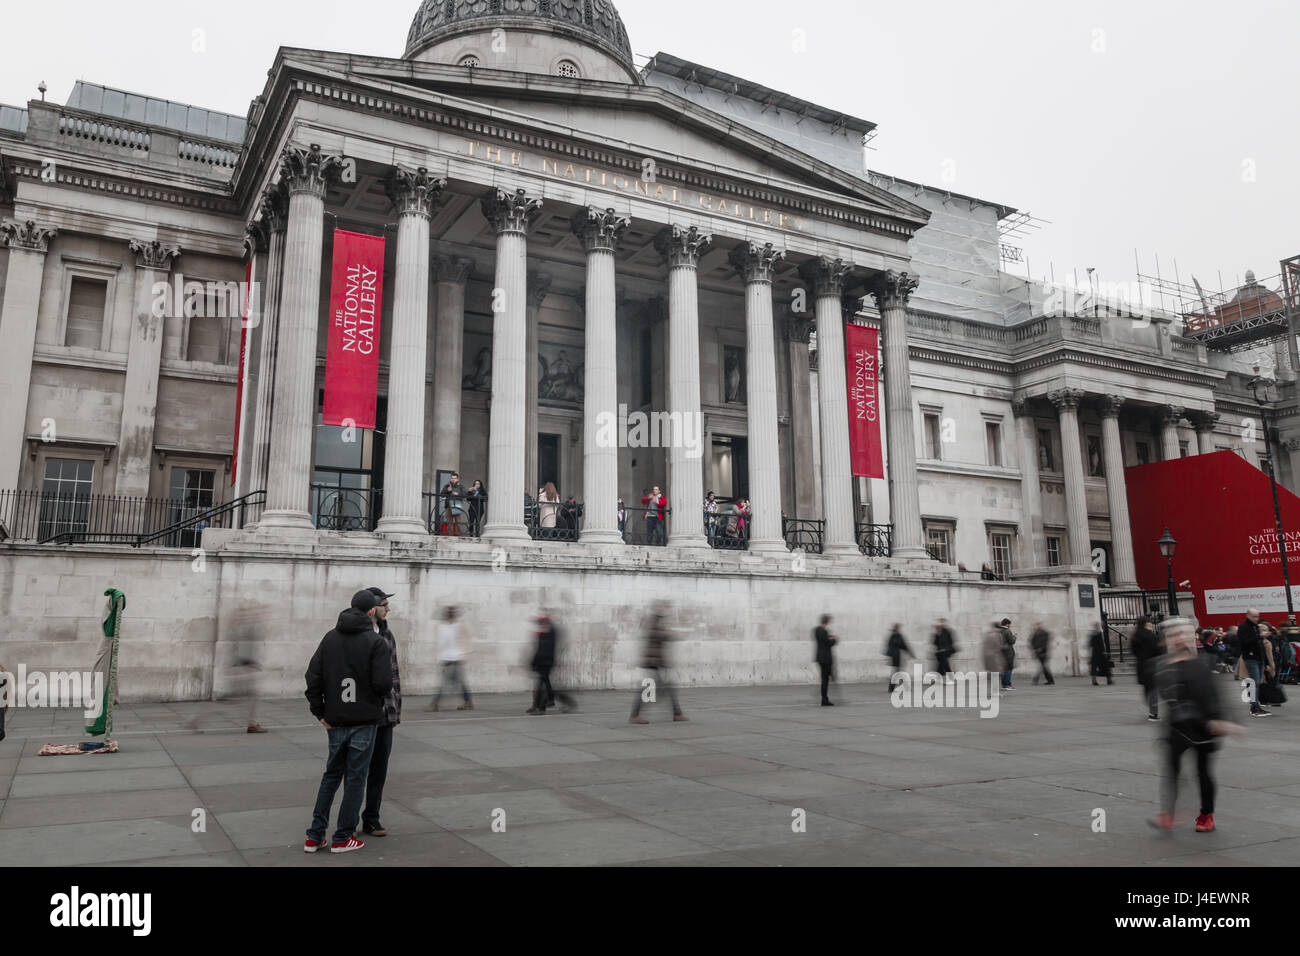 Eine lange Exposition von menschenmassen vorbei gehen. die National Gallery, der Trafalgar Square, London. Stockfoto